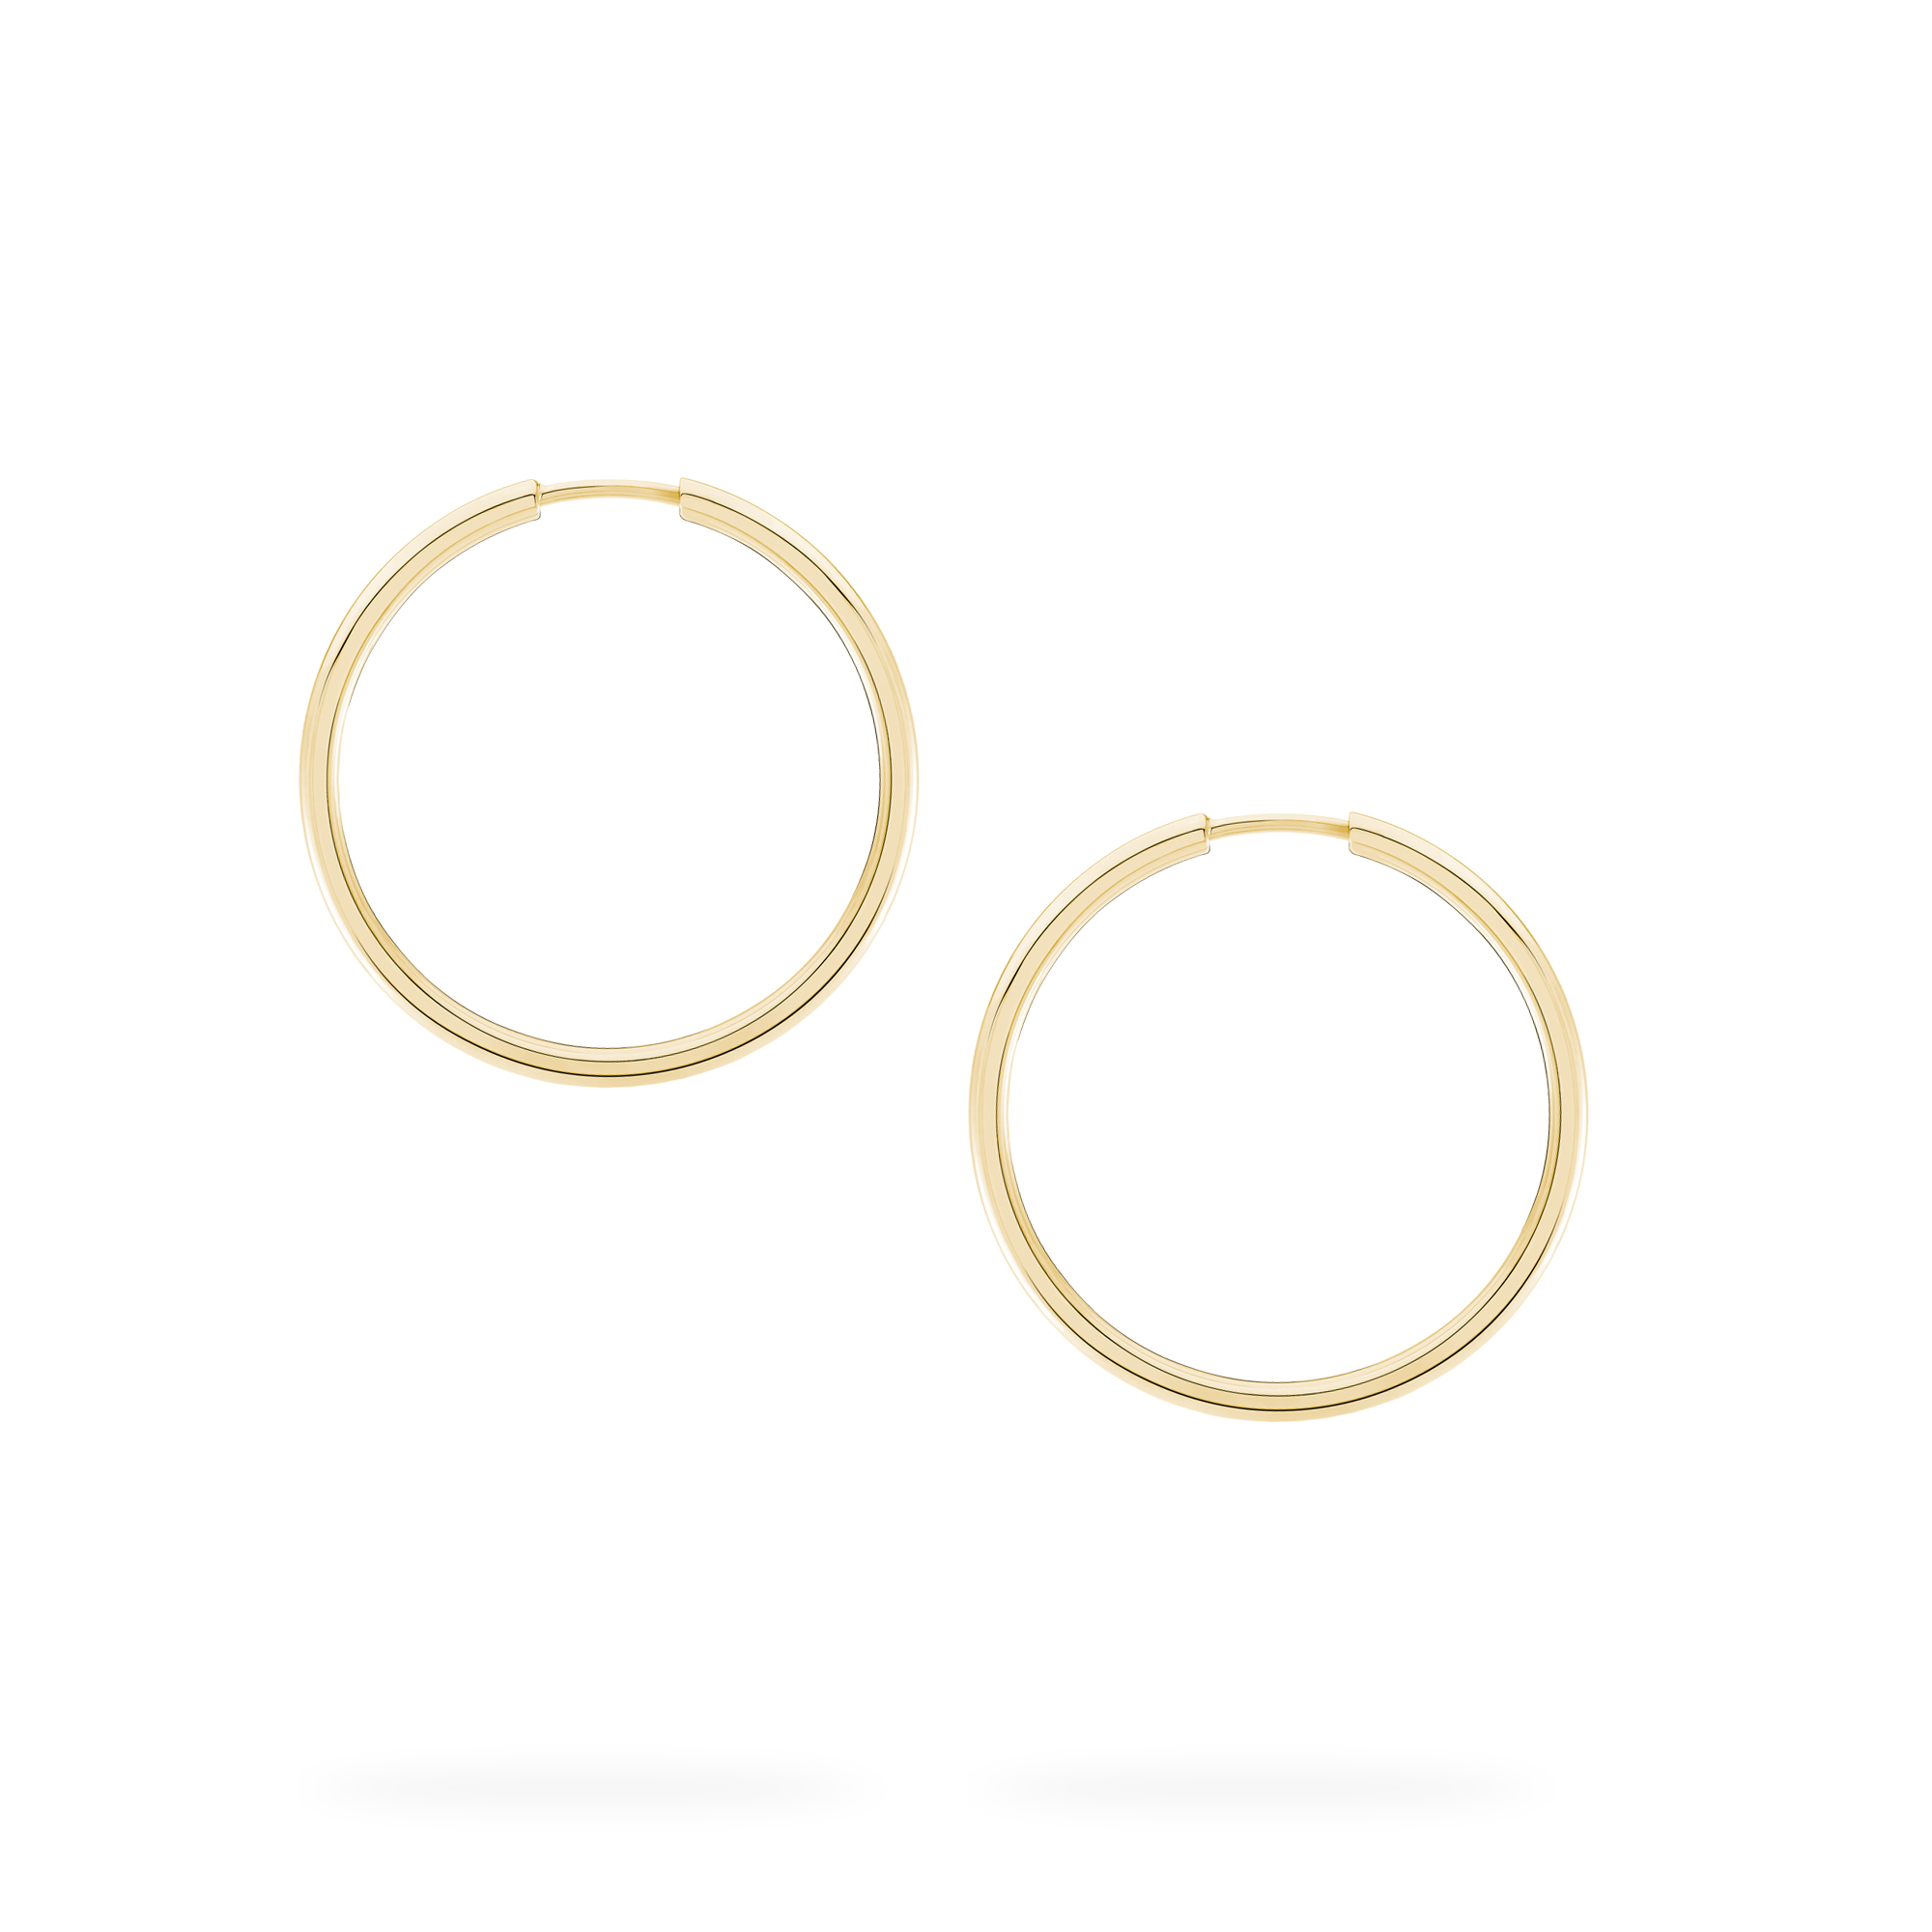 10k Gold Hoop Earrings Women’s 47mm Brushed accents - Arracadas en oro